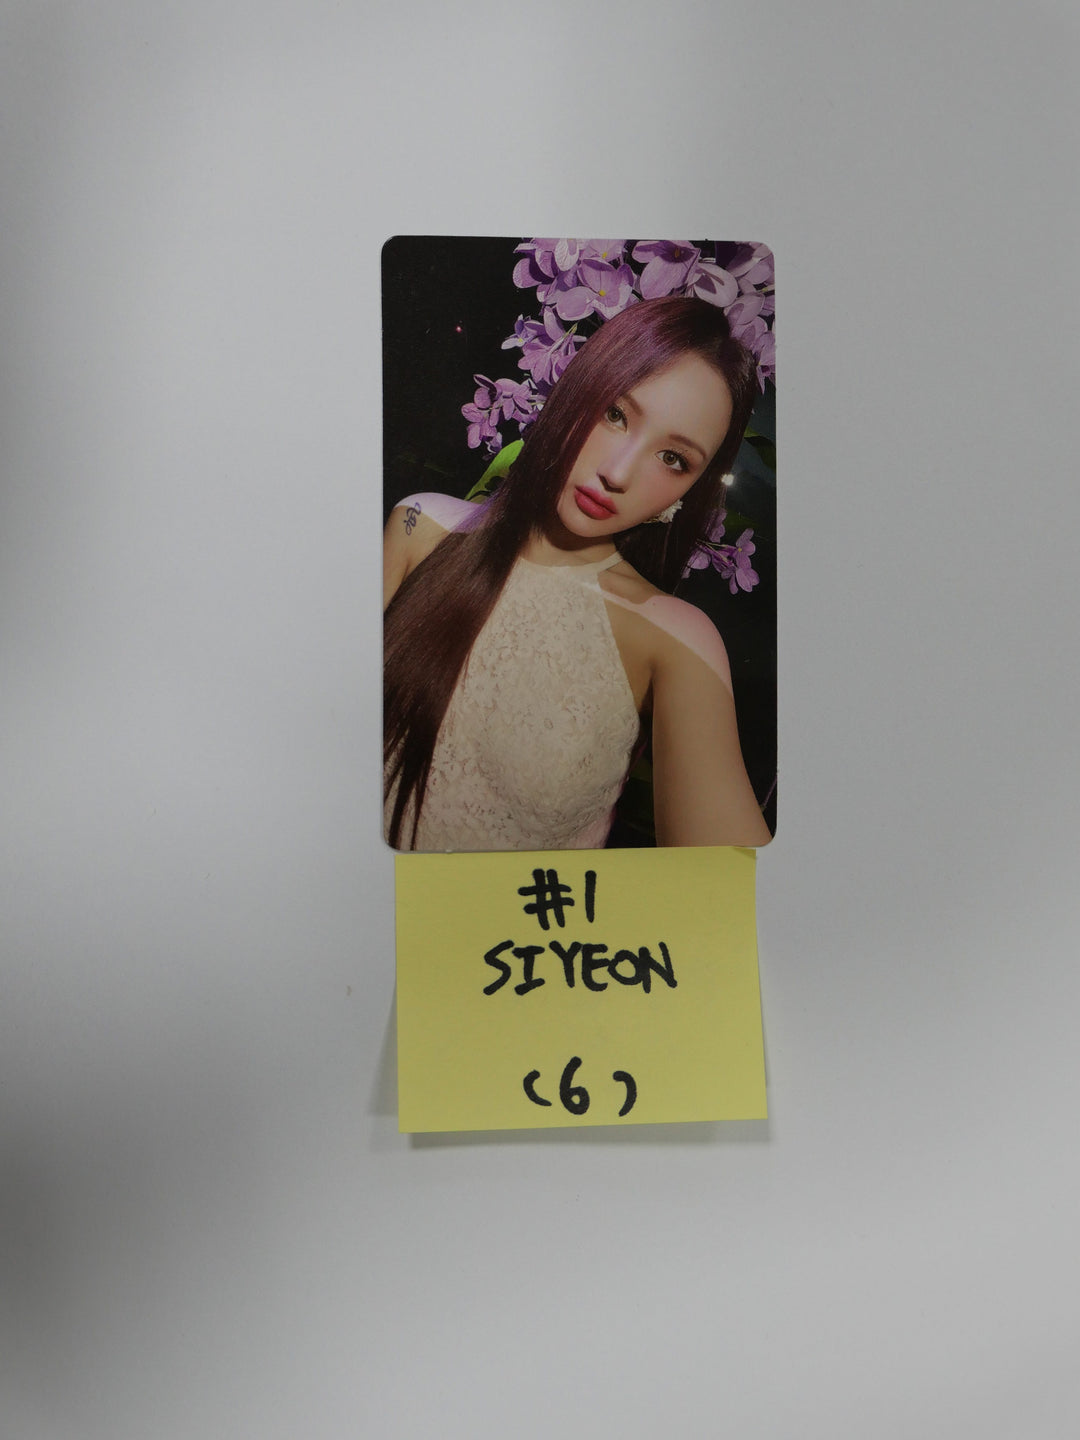 Dreamcatcher "Summer Holiday" - Official Photocard (Jiu, Sua, Siyeon )